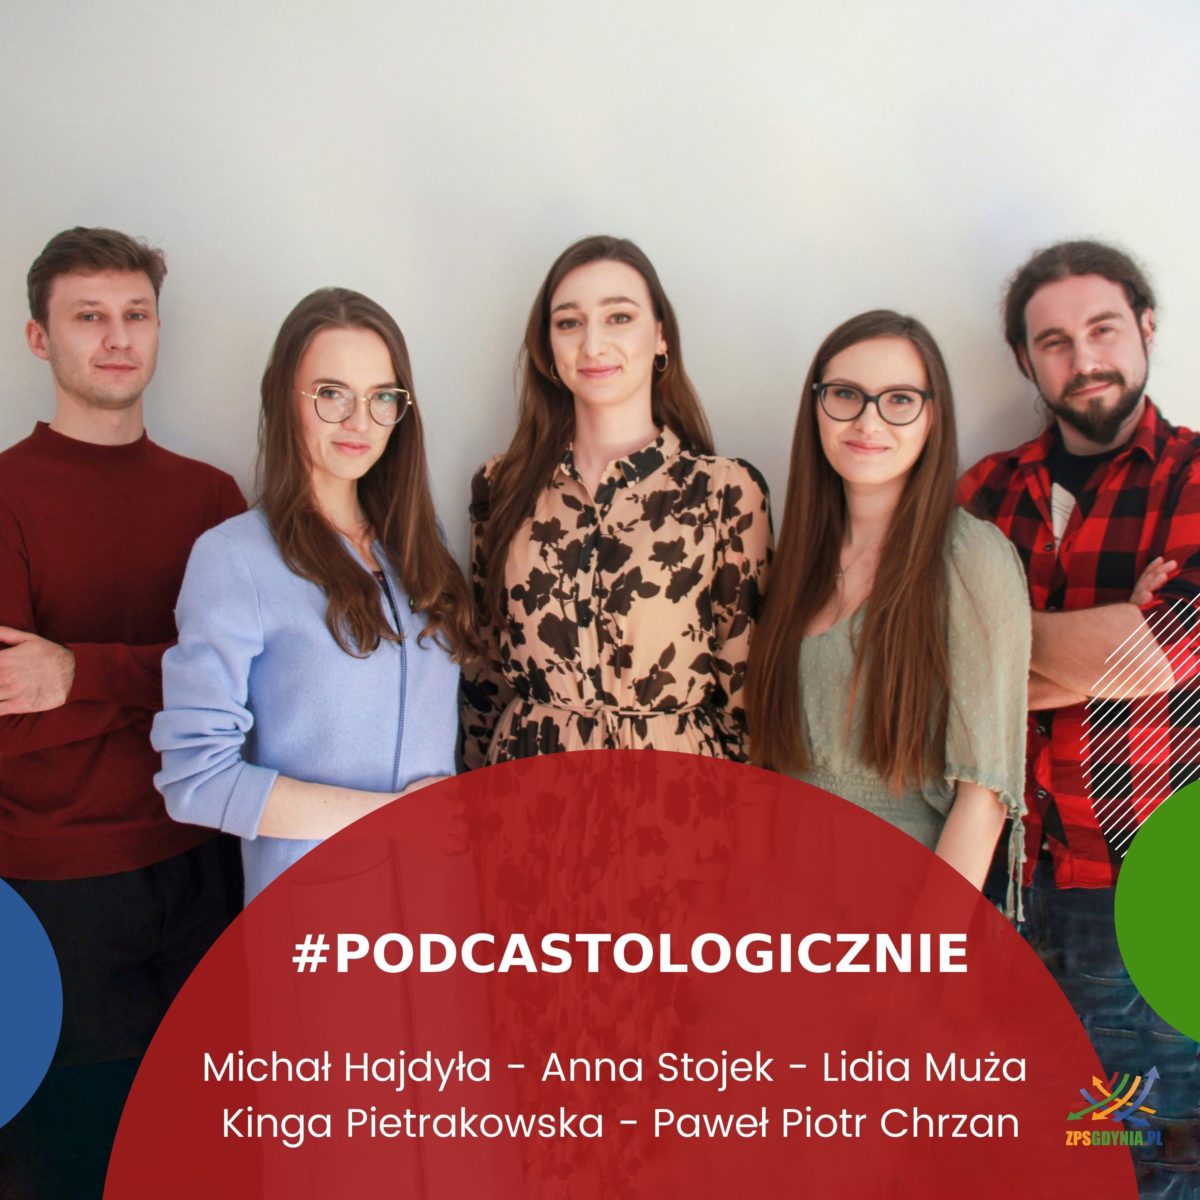 podcastologicznie - zespół